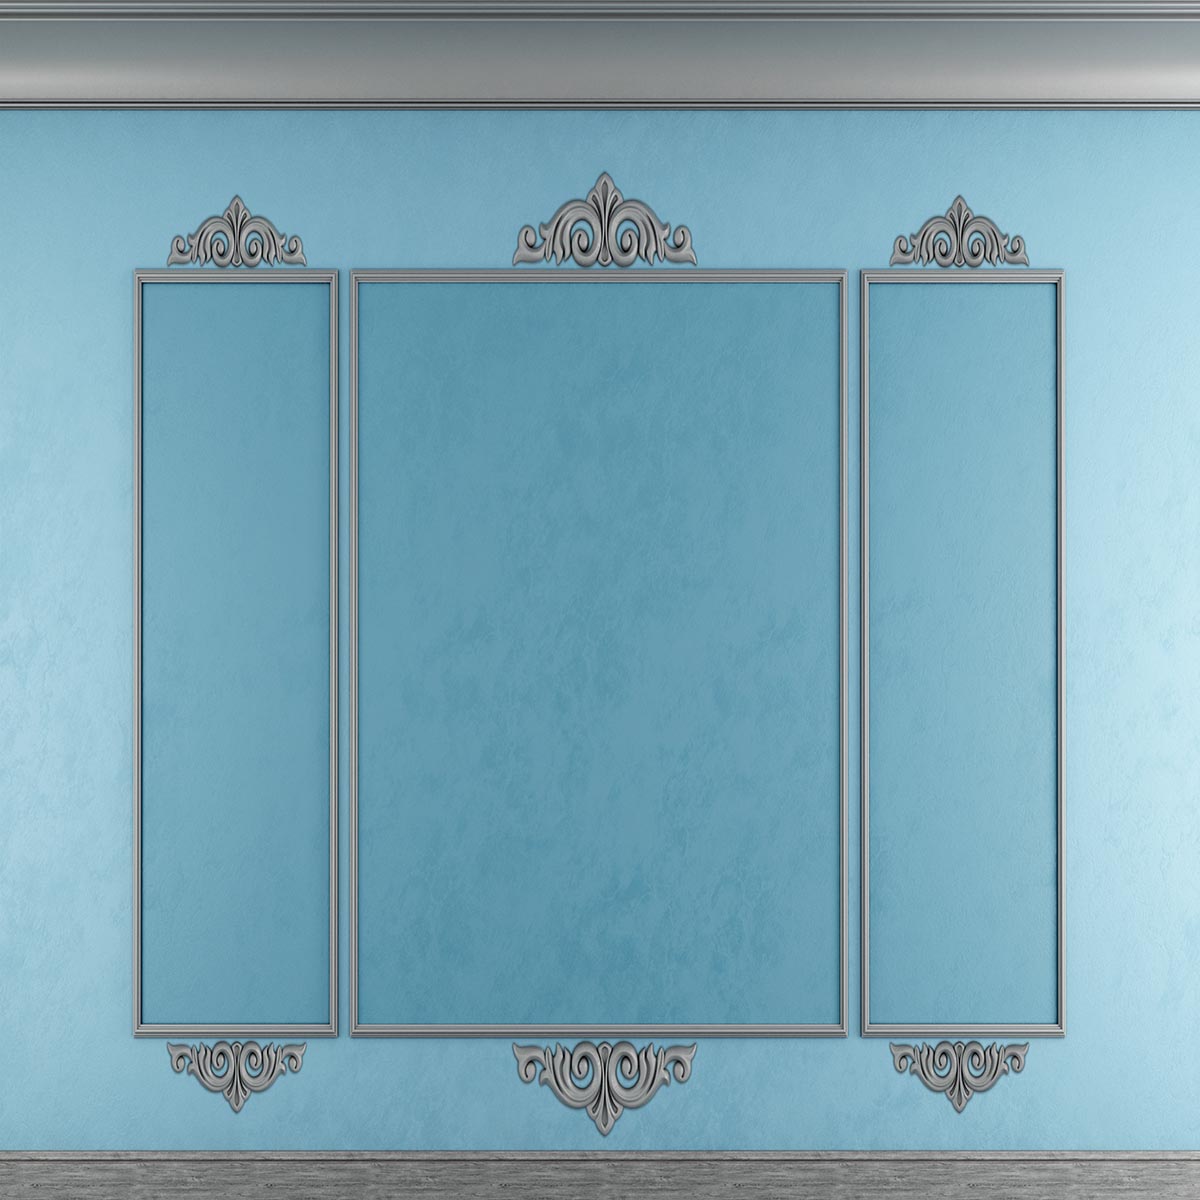 Toile de fond bleu clair gris Jante texture mur photographie décors mariage